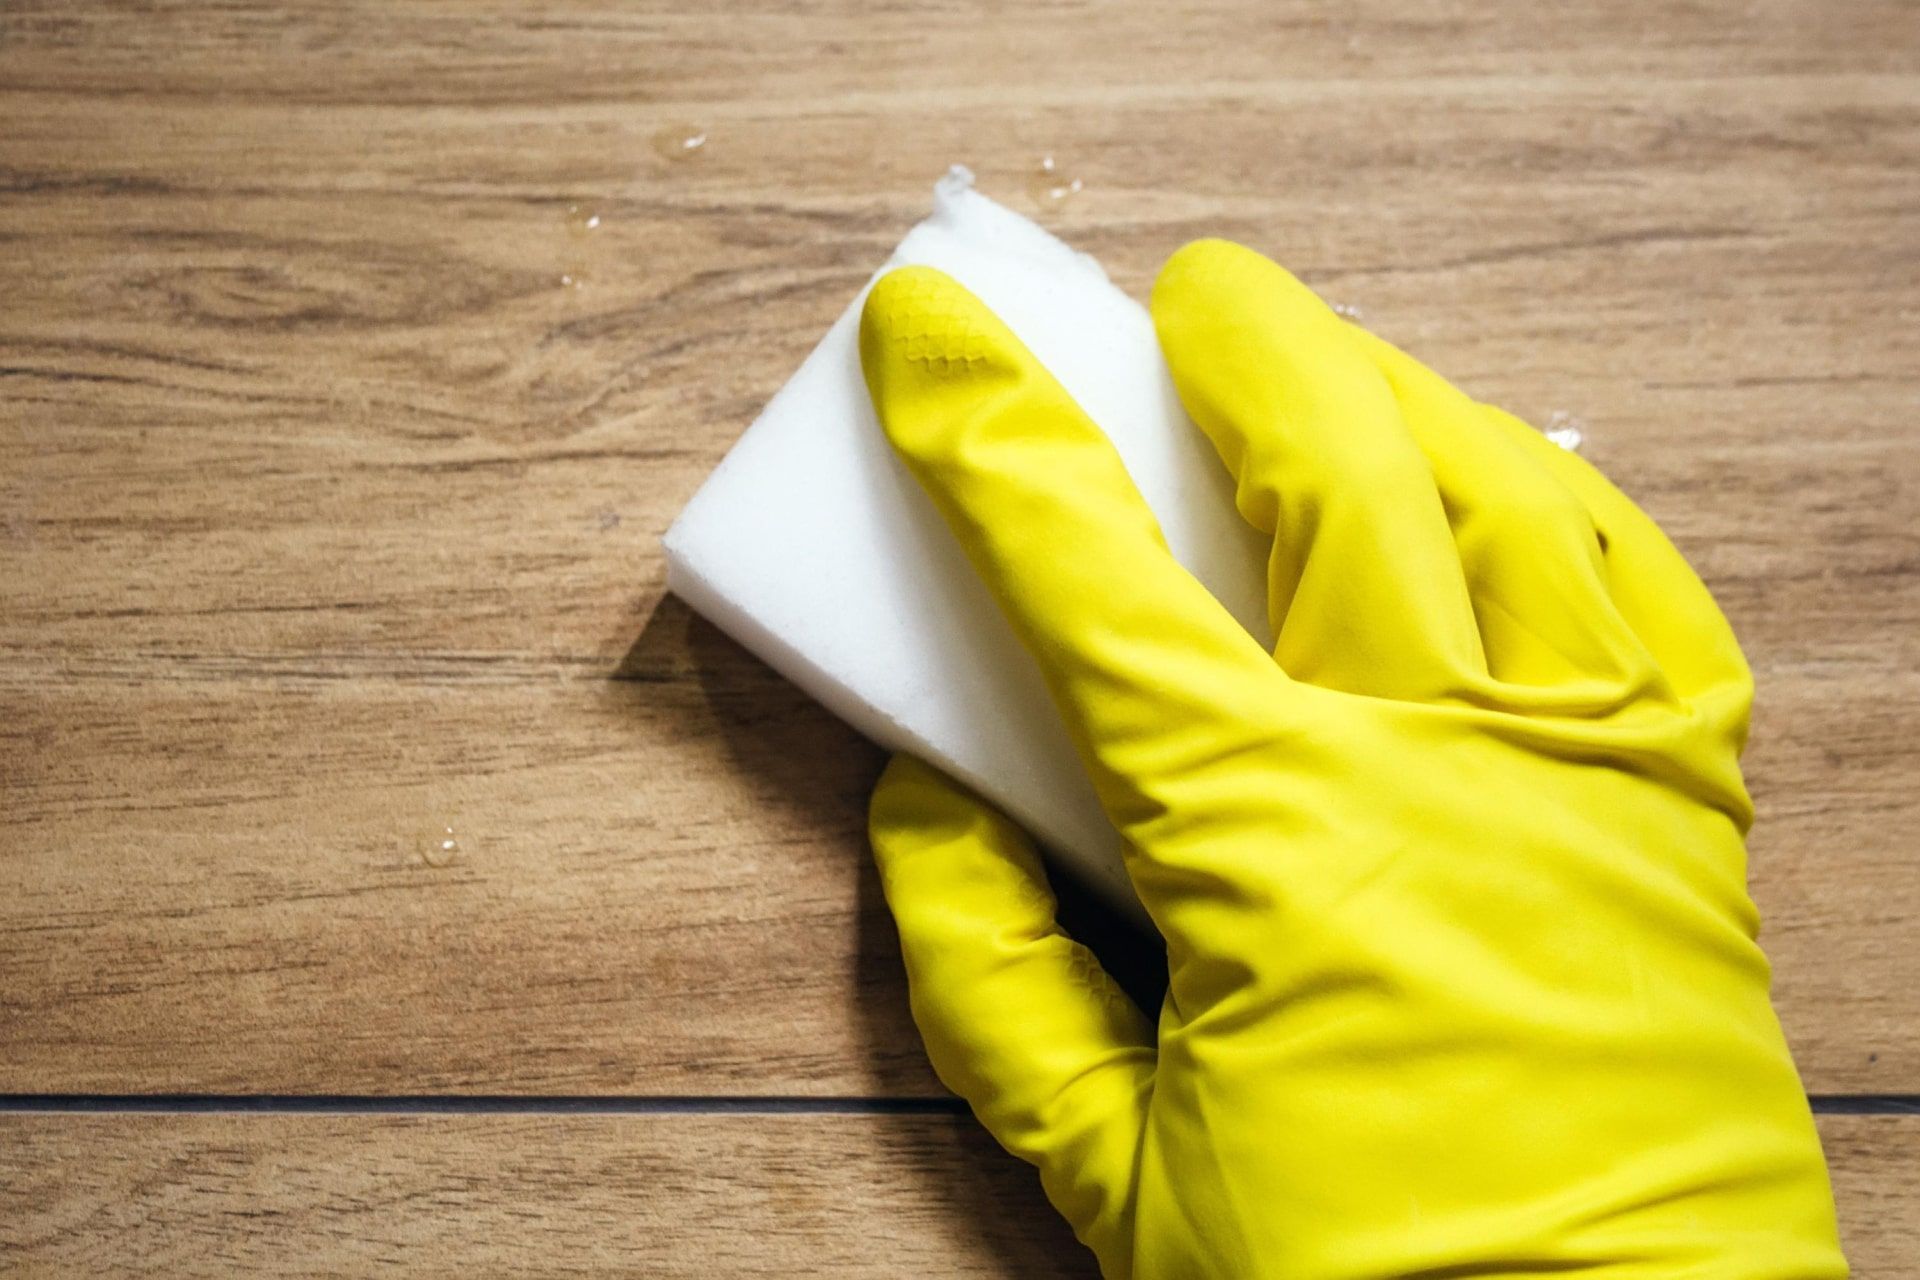 دستکش پلاستیکی زرد در حال تمیز کردن سطح چوبی با اسفنج سفید